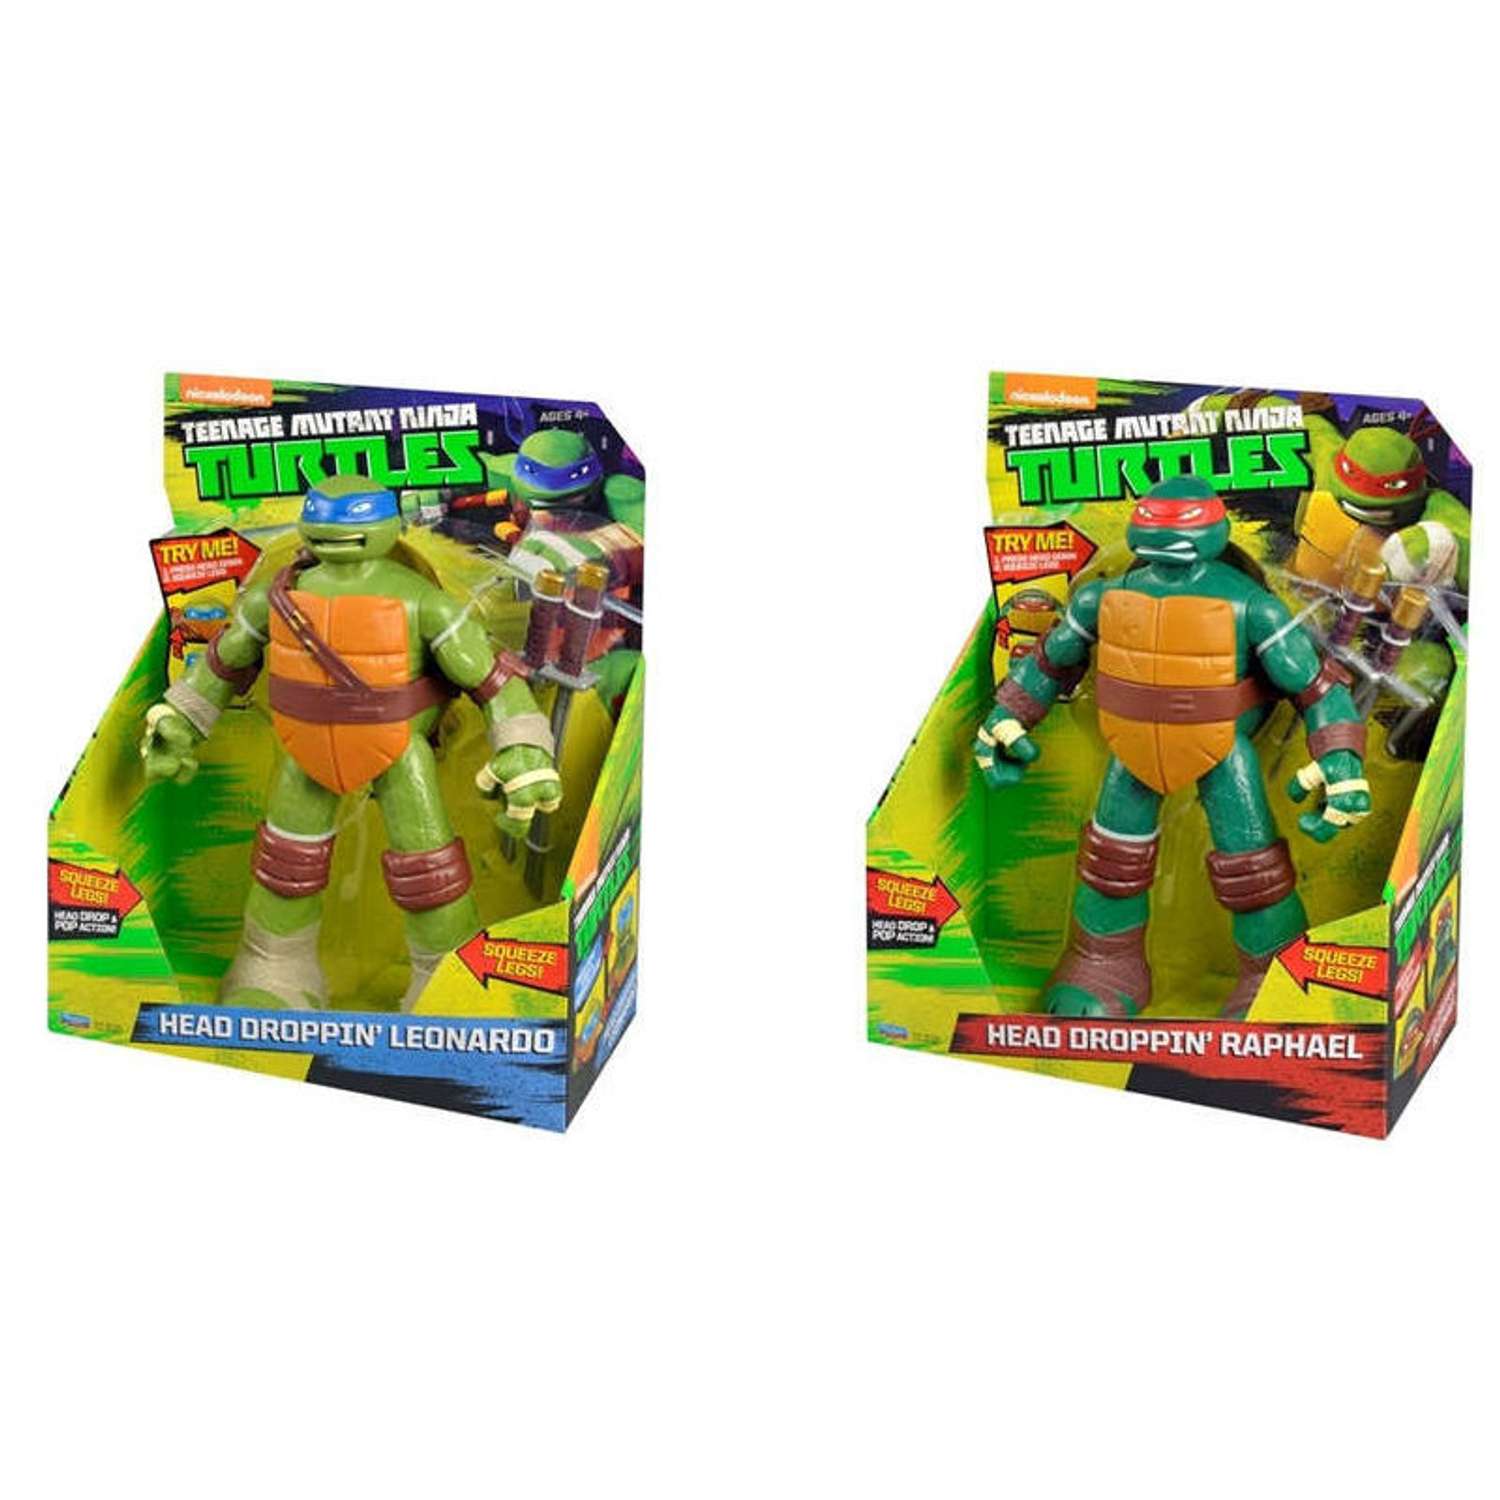 Игрушки Черепашки Ниндзя Teenage Mutant Ninja Turtles | Играландия - интернет магазин игрушек